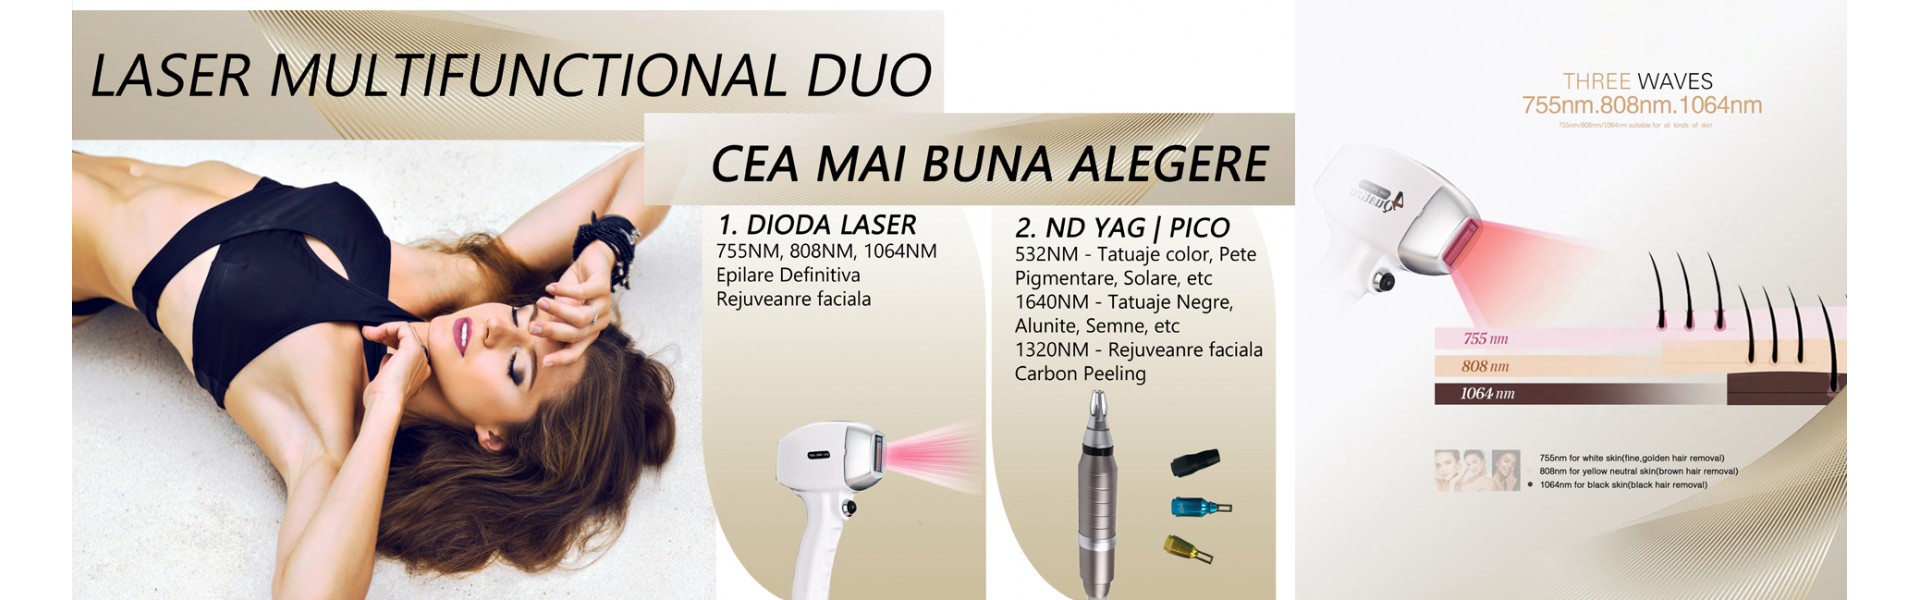 Laser multifunctional Duo